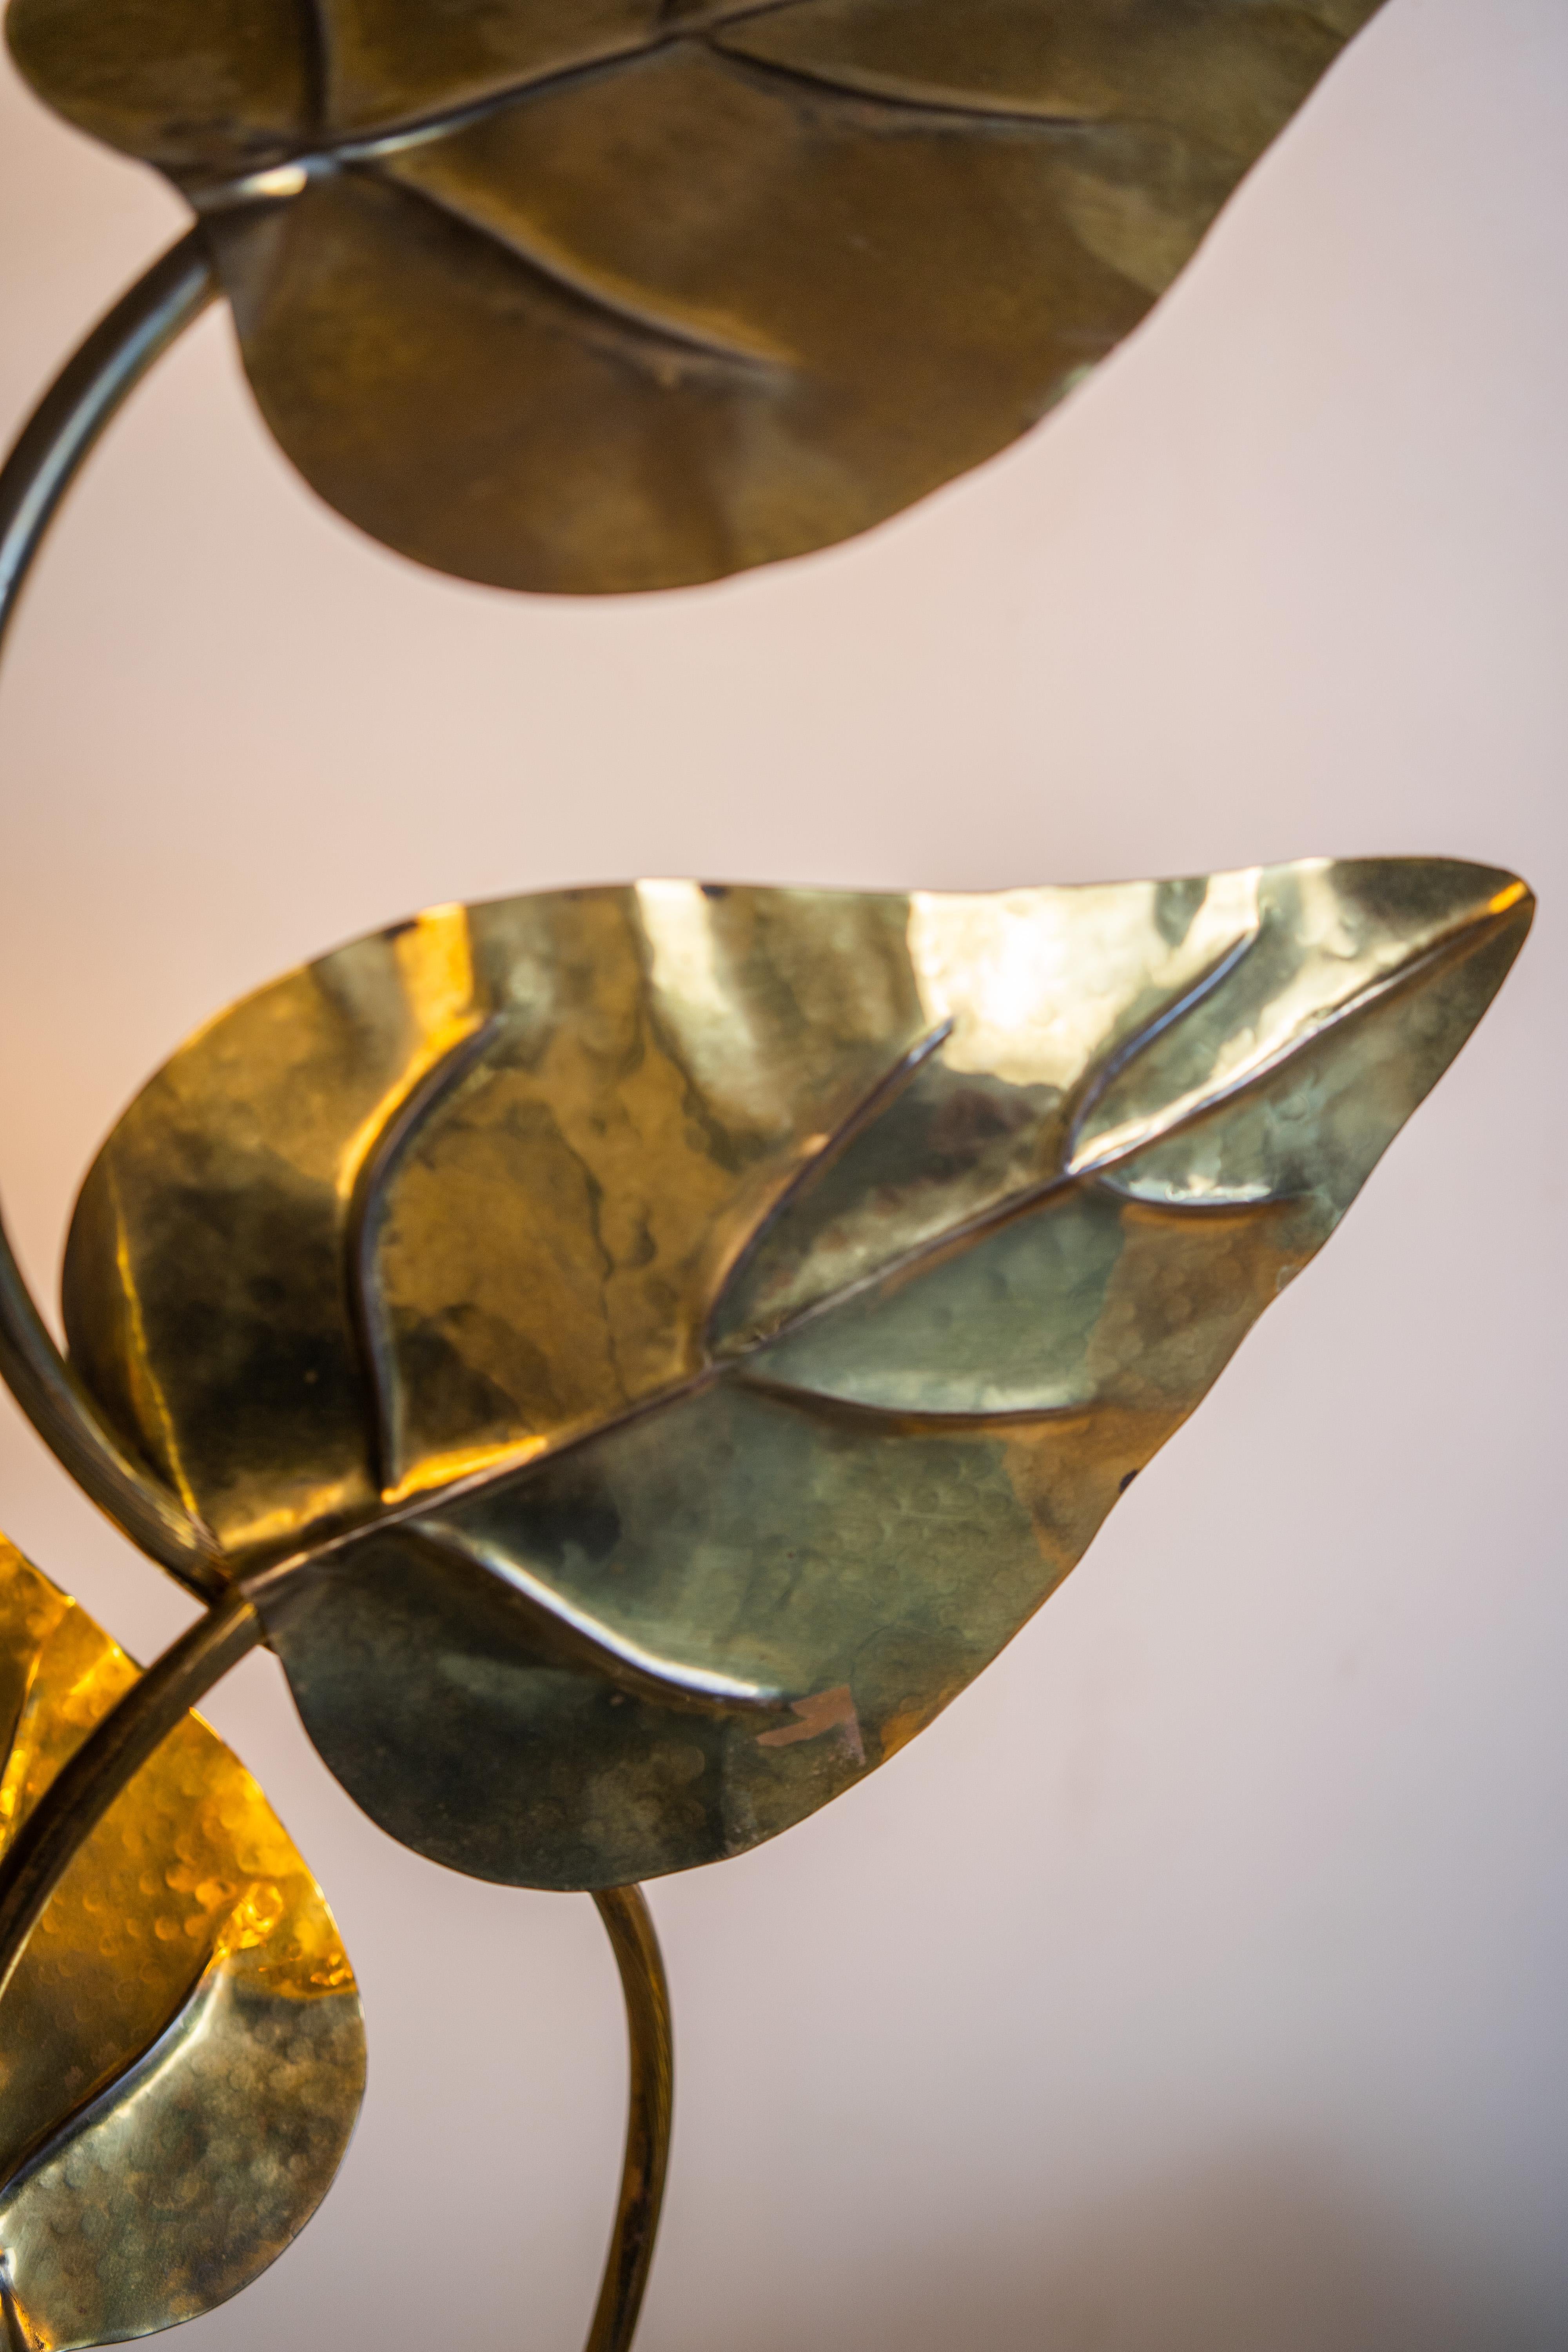 Blattförmige Stehleuchte aus Messing von Tommaso Barbi, Italien, 1970.

handgemacht von den Artis, die mit Messing eine Stehlampe in Form von drei Rhabarberblättern geschaffen haben. 

Sein warmes und schönes Licht schafft eine gemütliche